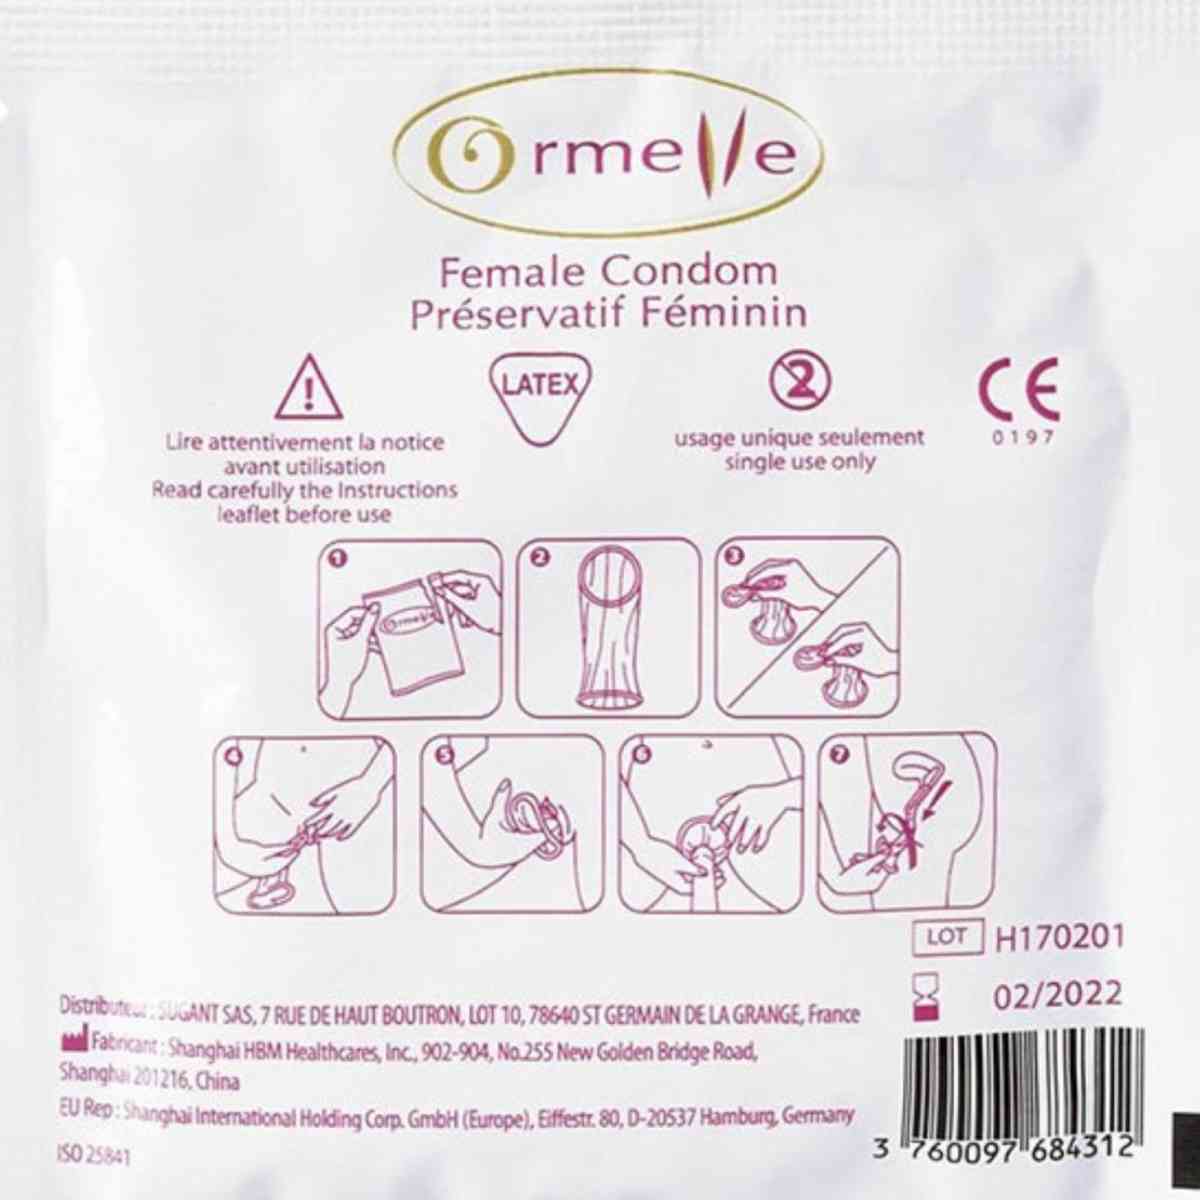 Verpackung Frauen-Kondom "Ormelle"